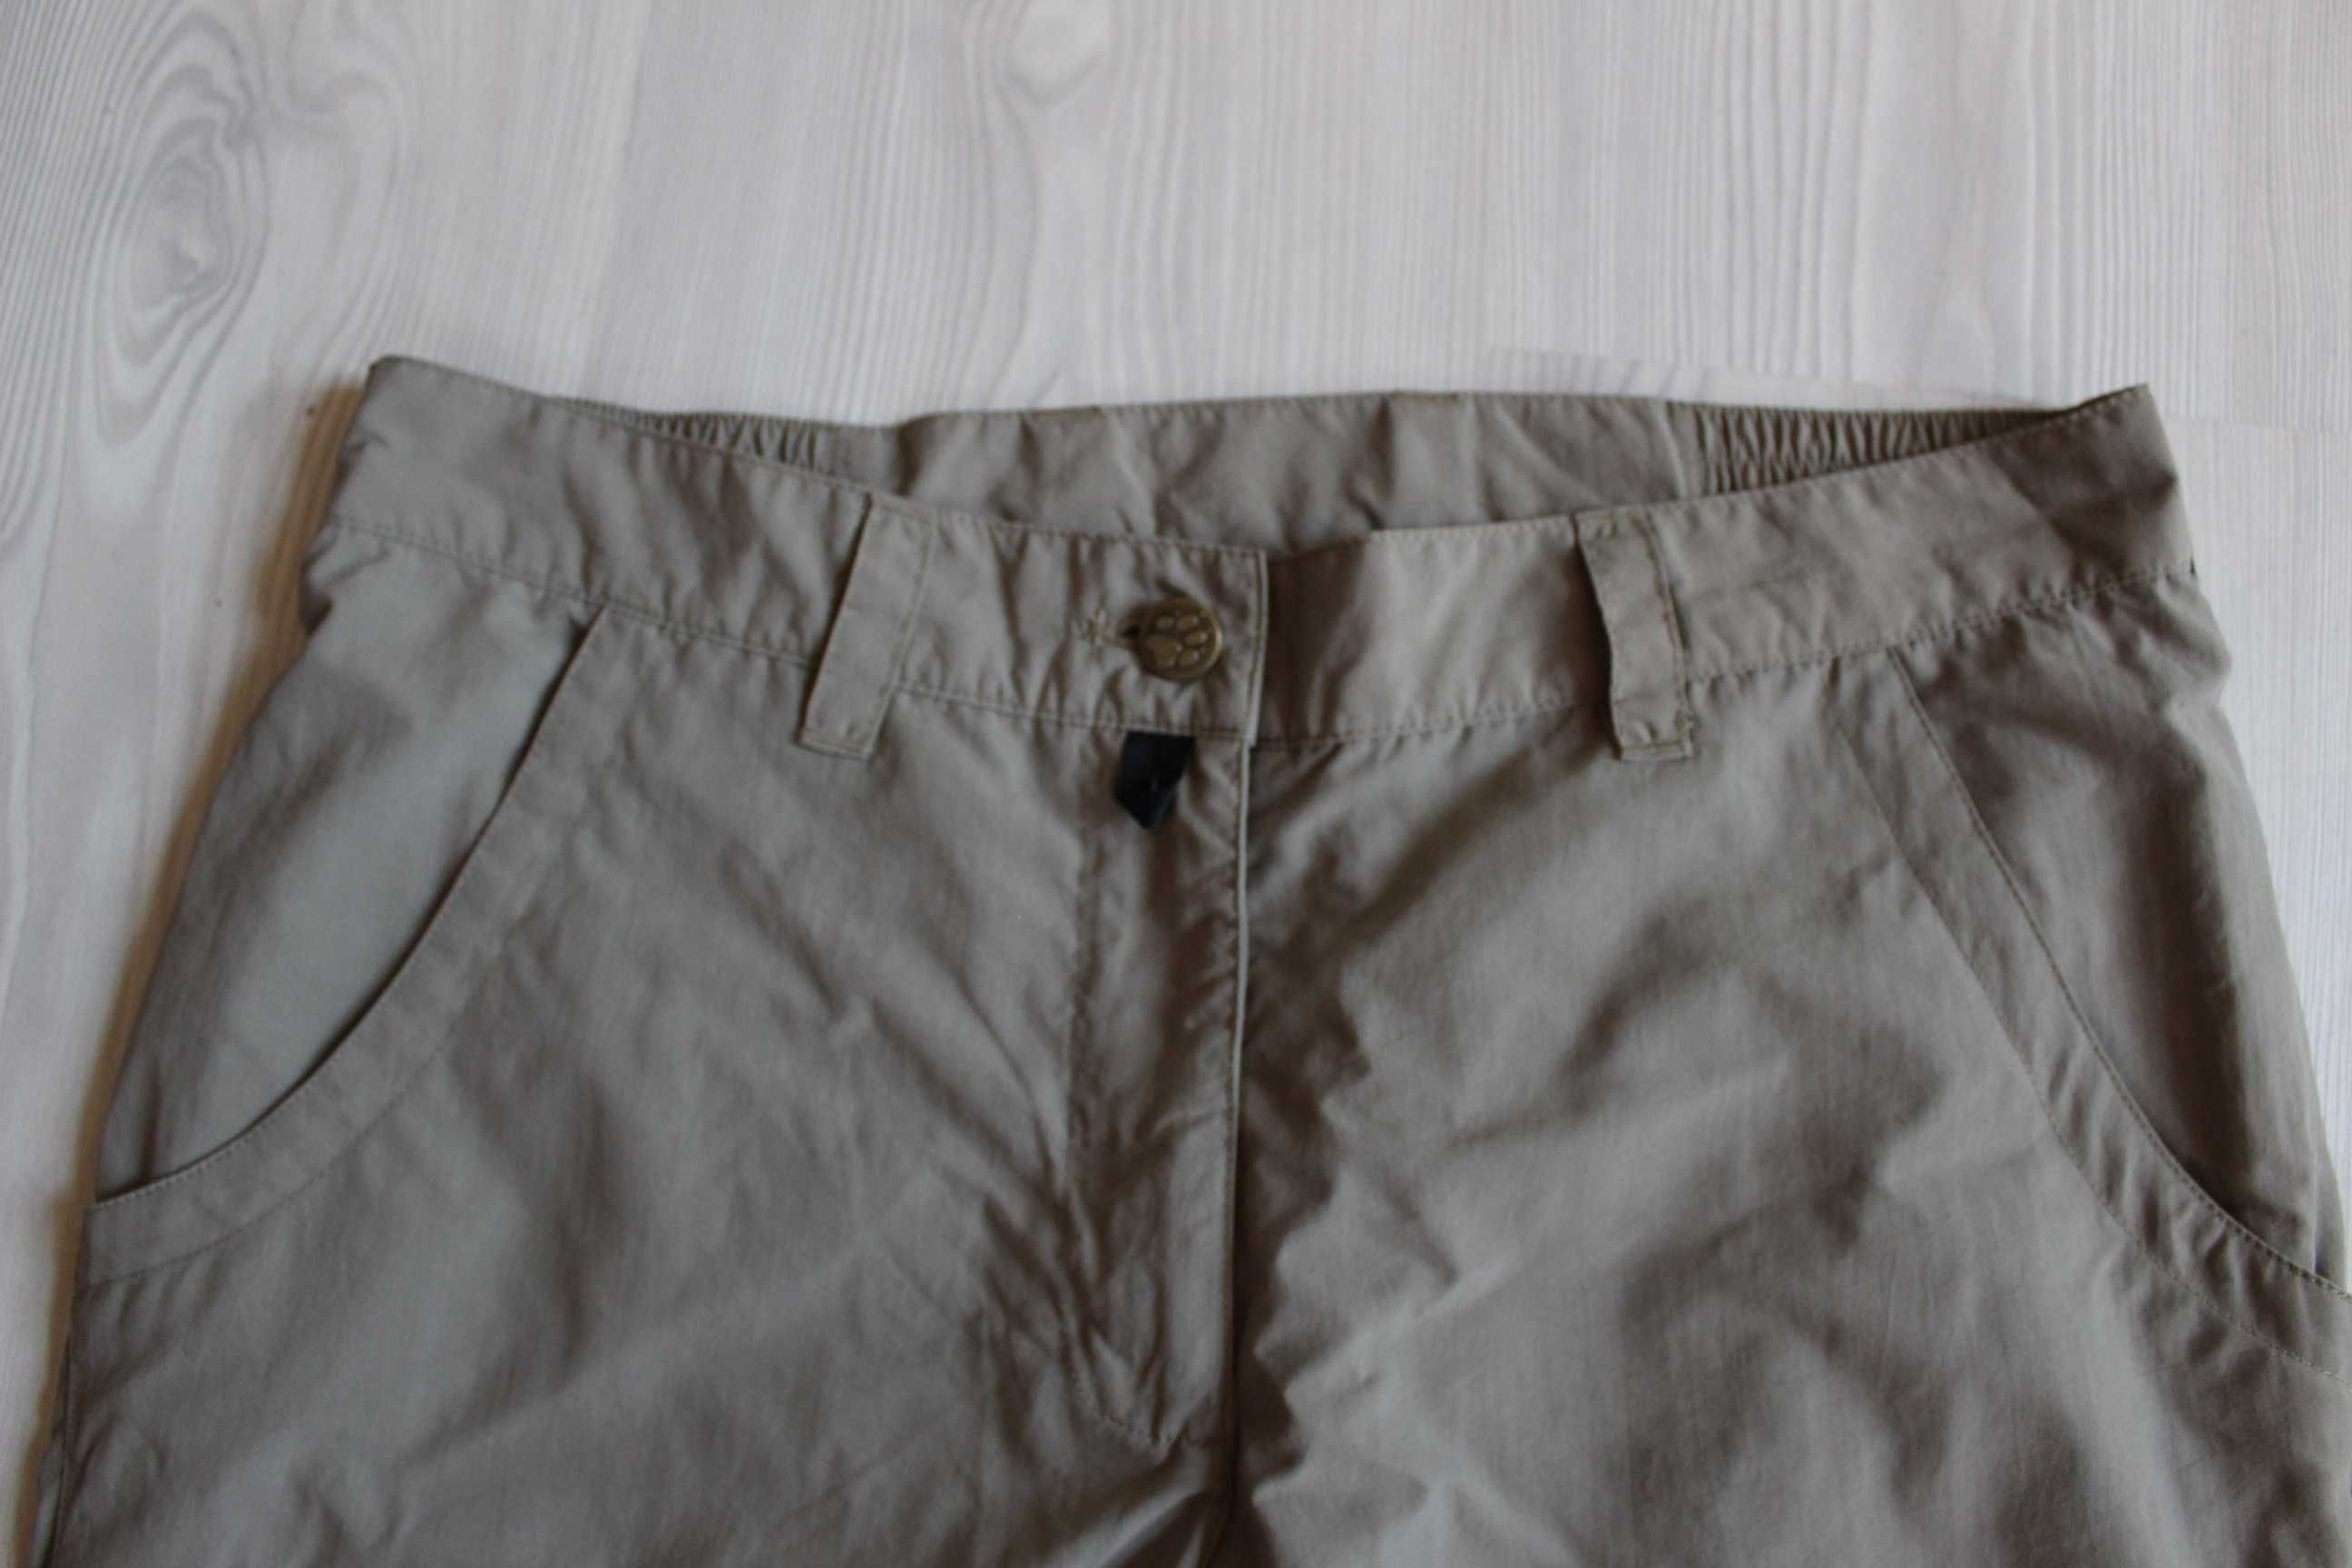 Pantaloni casual/munte femei JACK WOLFSKIN, marime M - 38